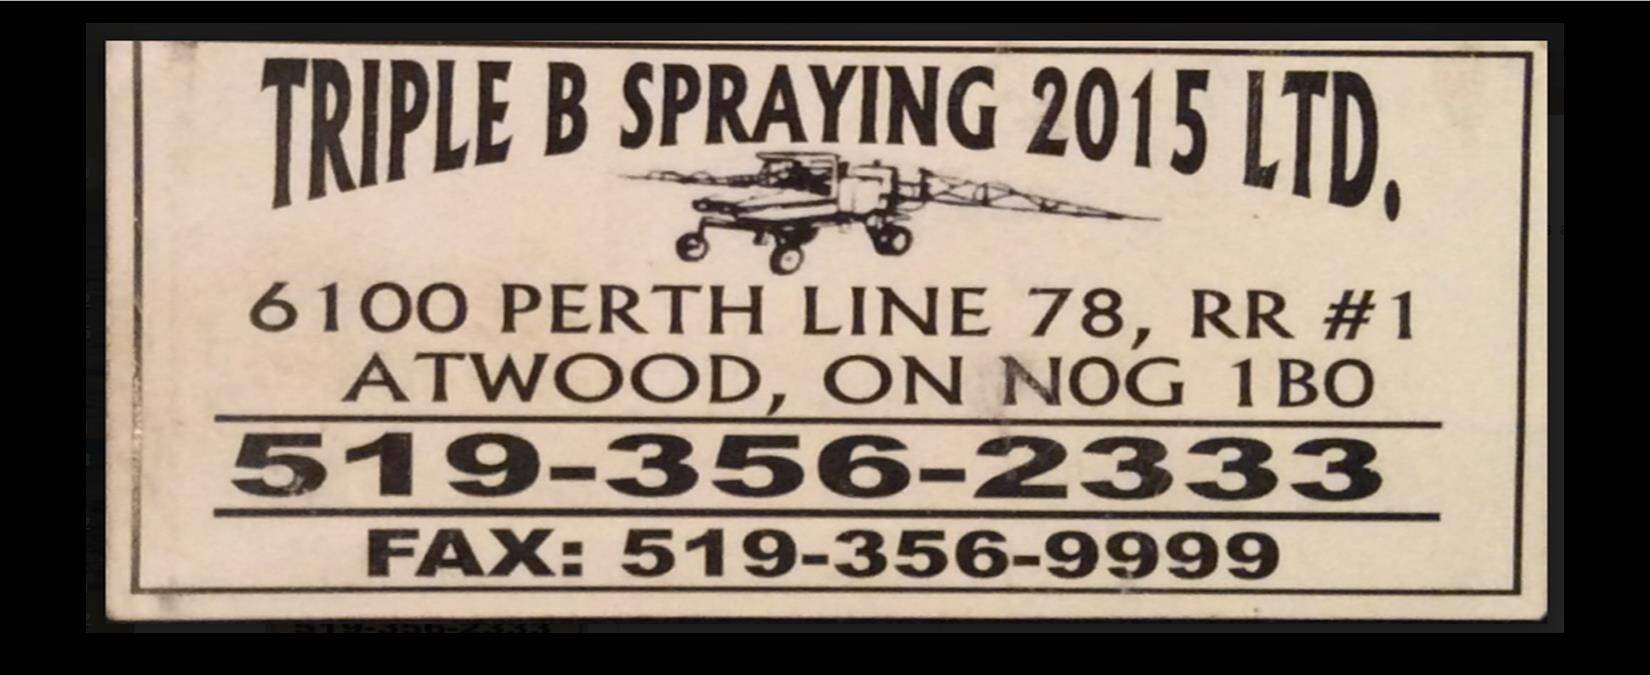 Triple B Spraying 2015 Ltd